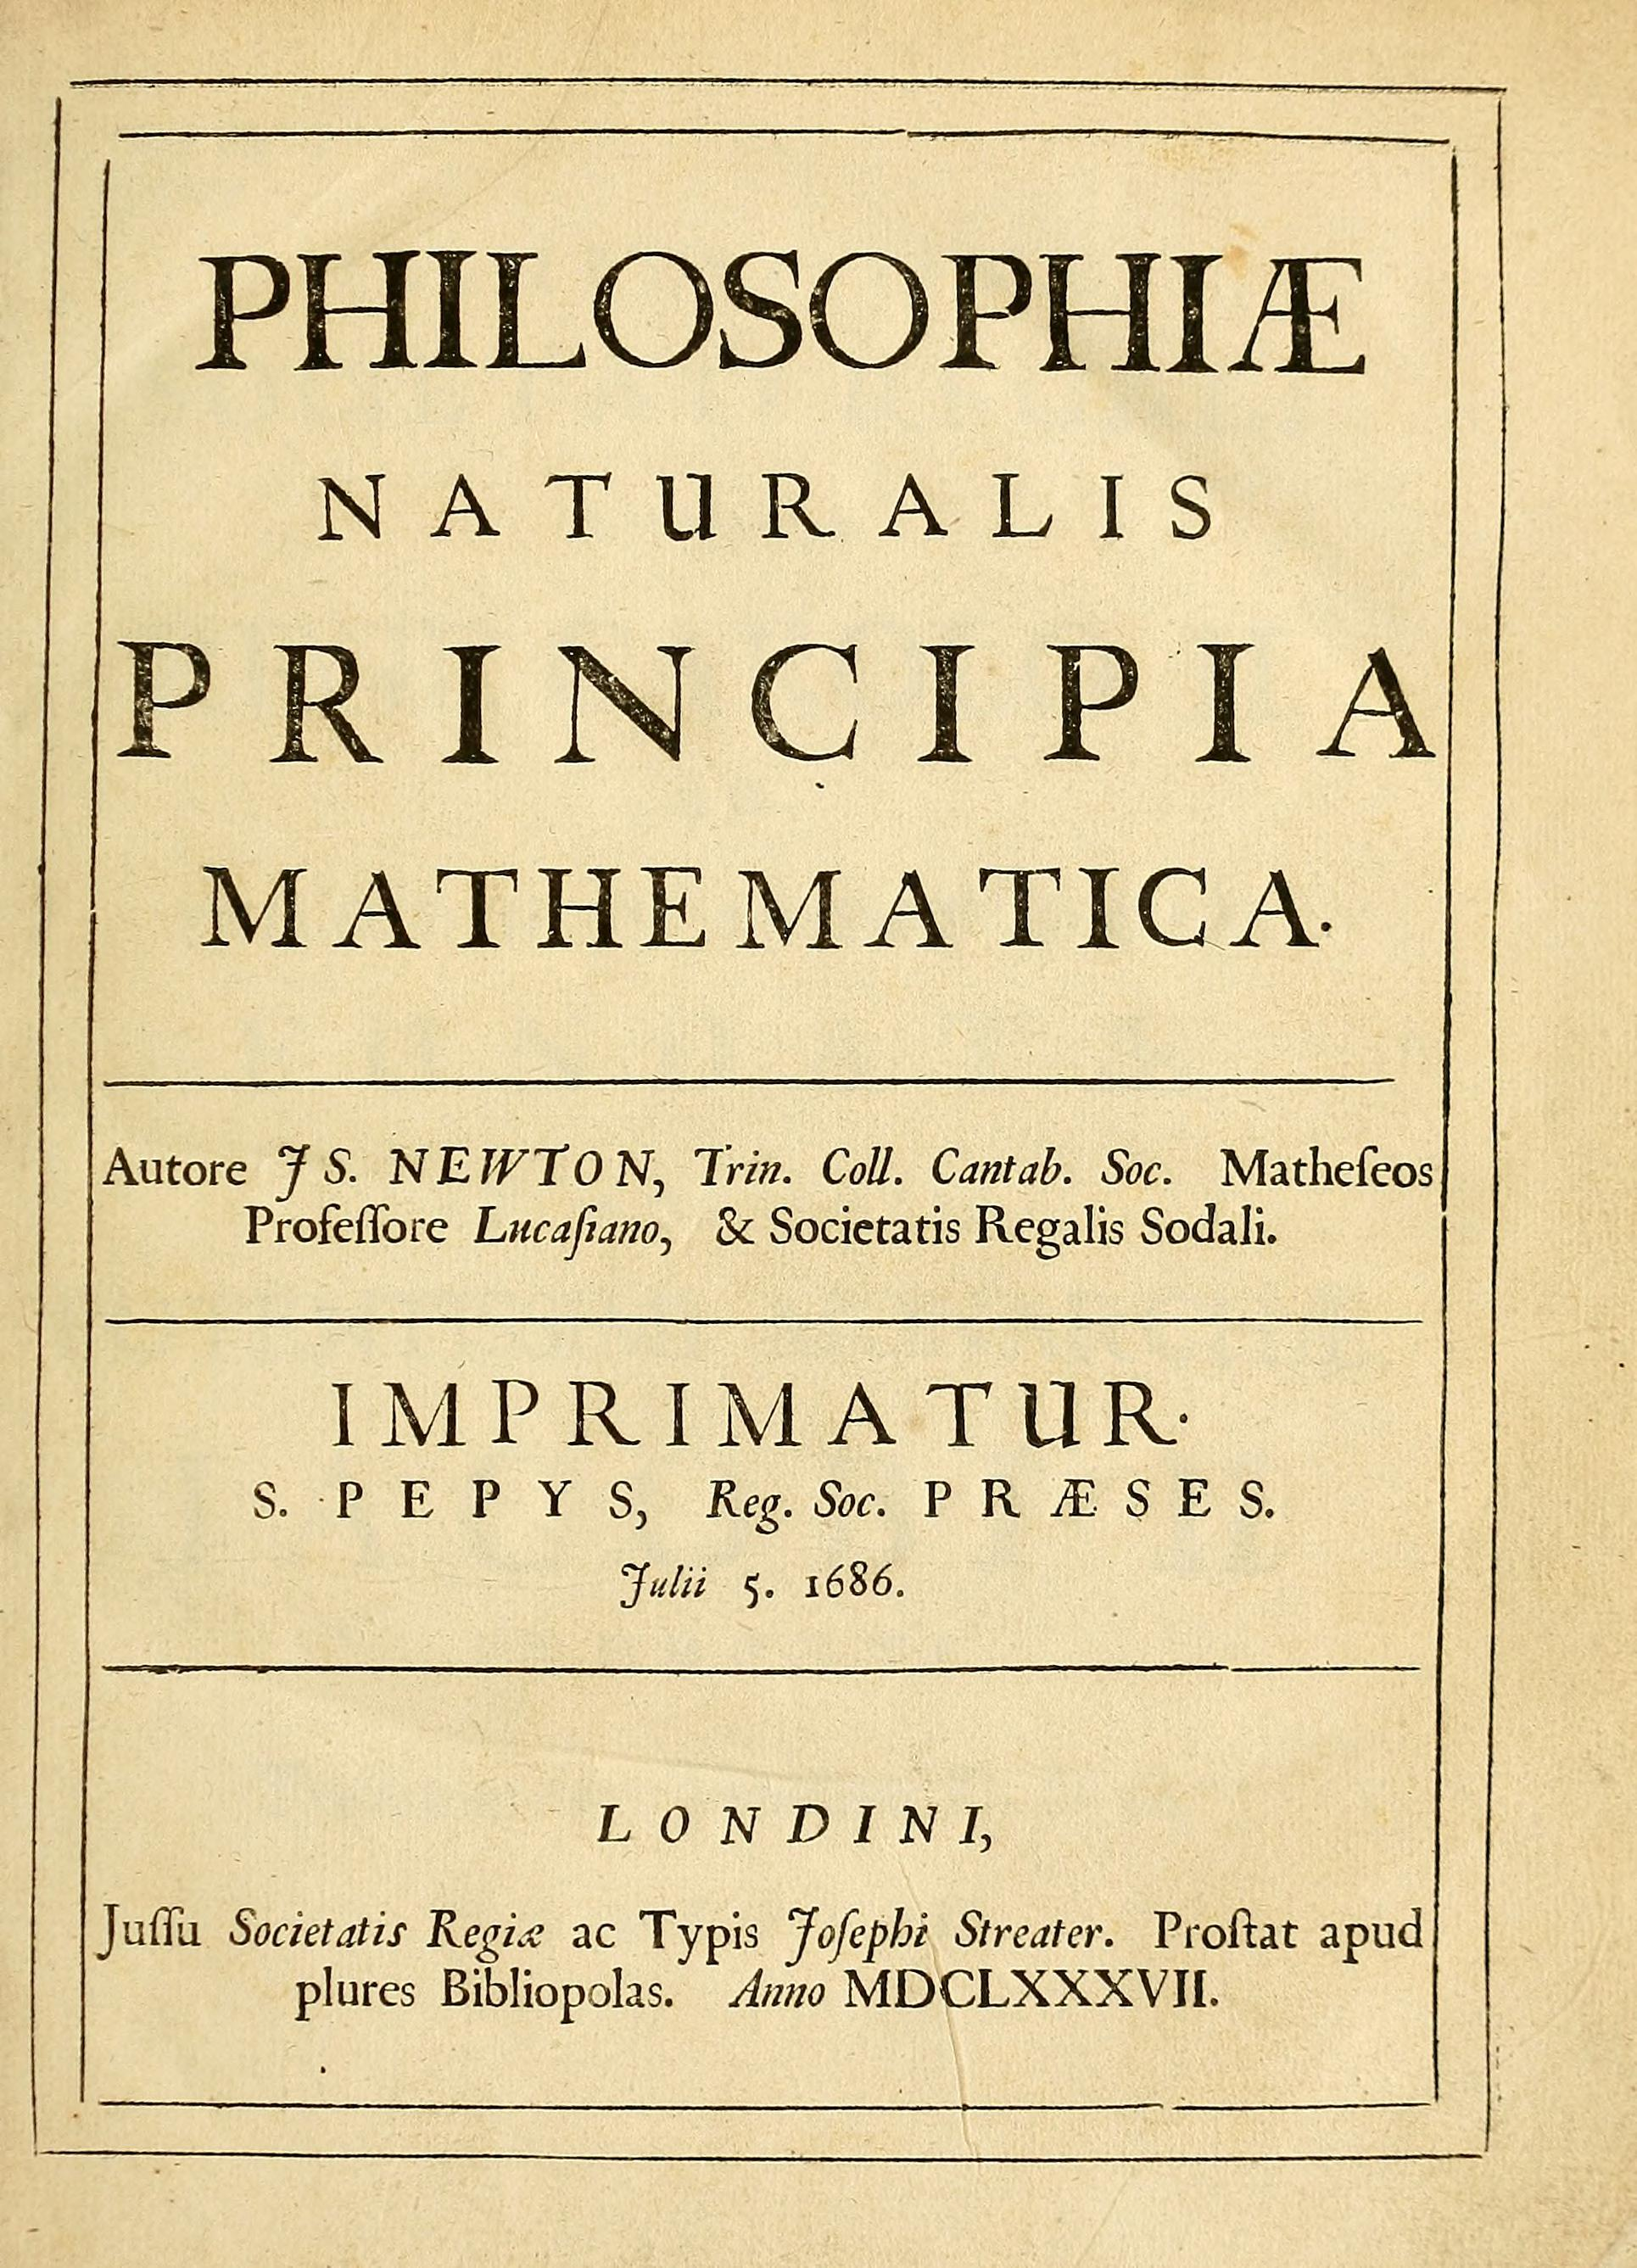 Principia, obra publicada en 1687, sobre mecánica y cálculo matemático. (Fuente Wikipedia)